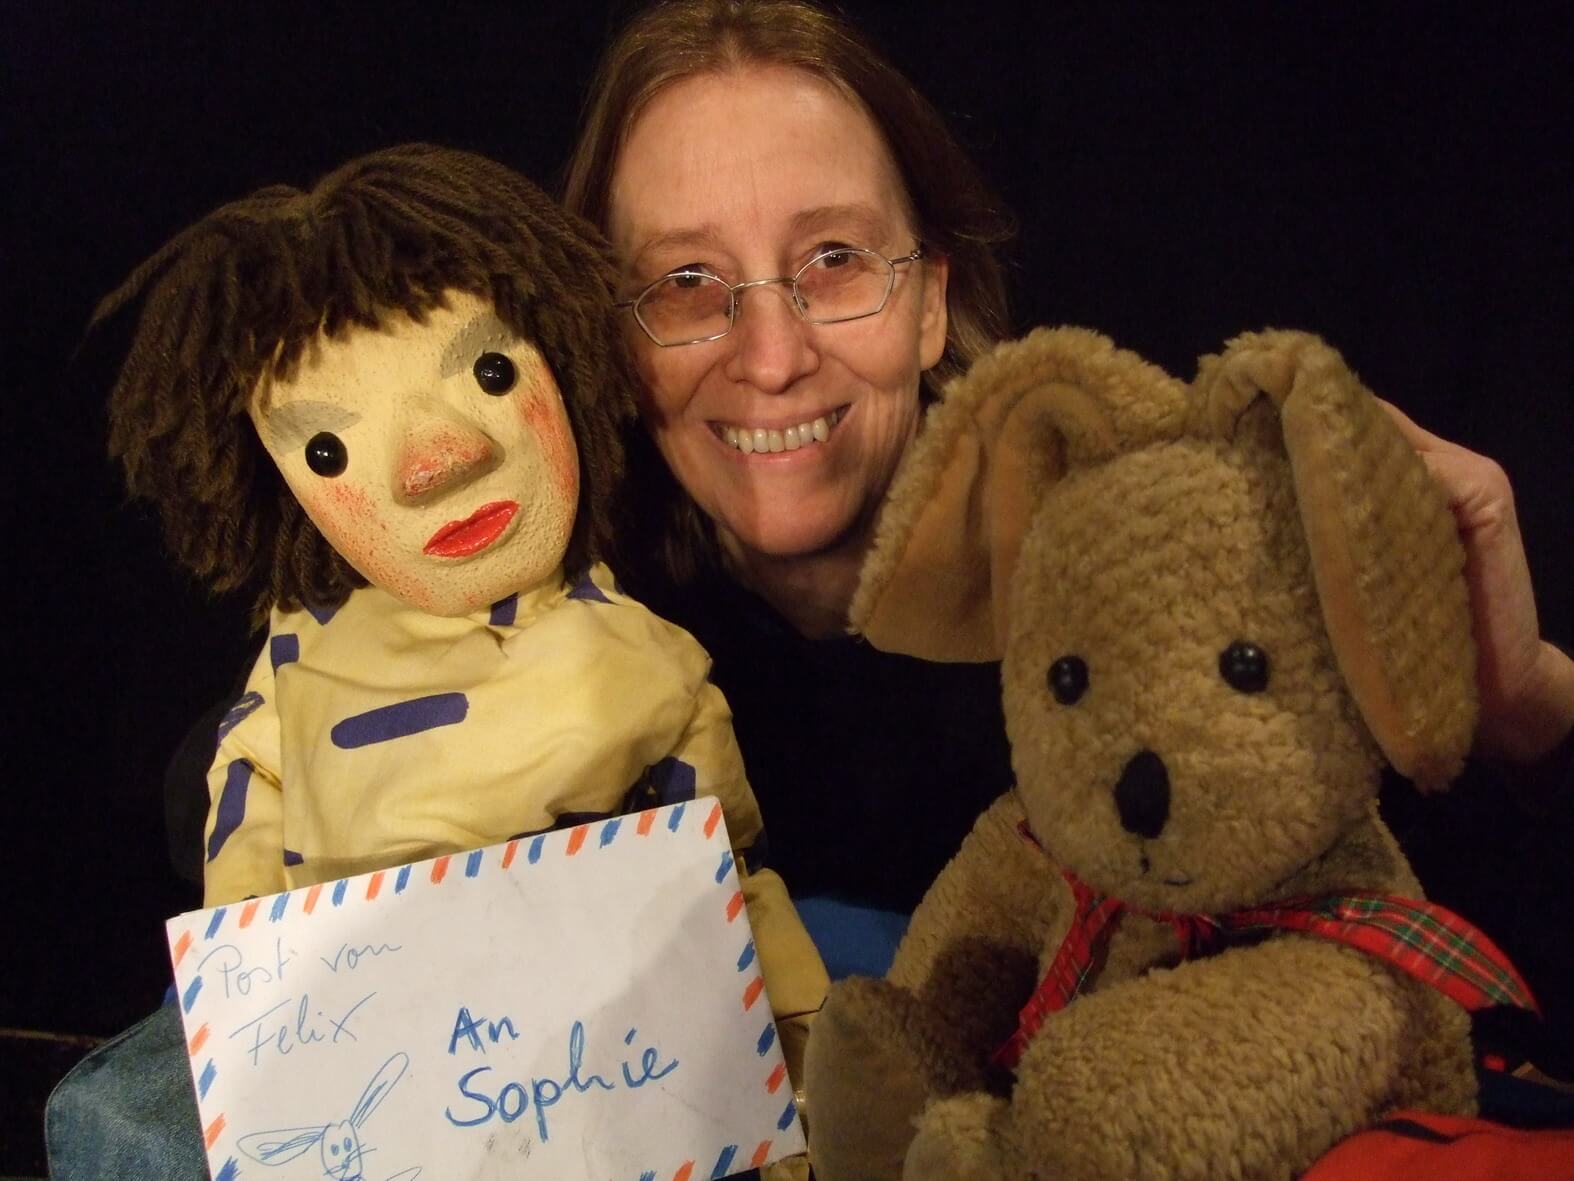 Foto: Marionette Sophie mit Brief in der Hand, Puppenspielerin Dorothee Wellfonder und der Kuschelhase Felix